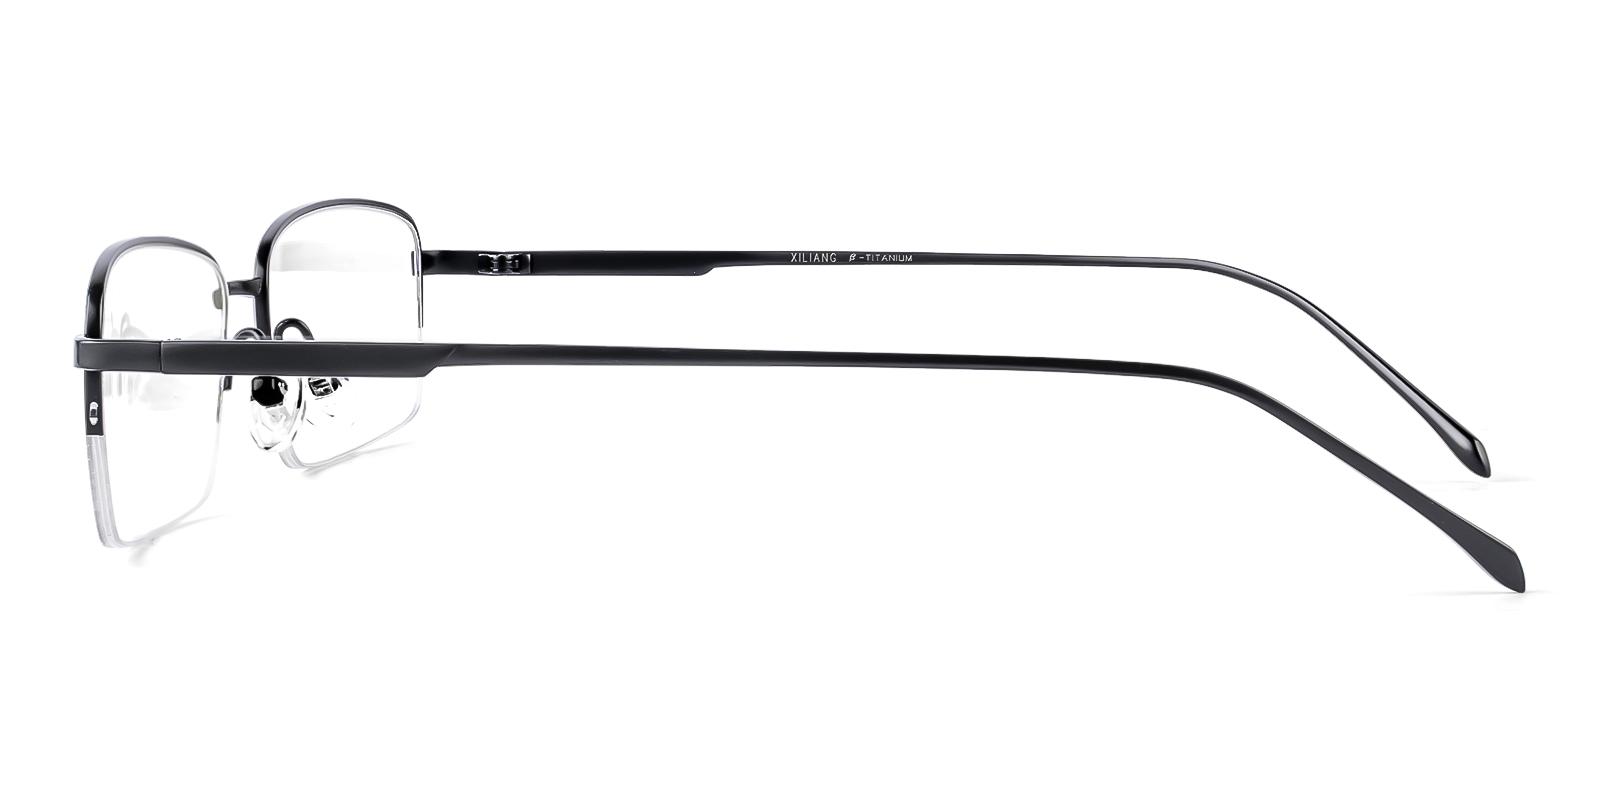 Mammoar Black Titanium Eyeglasses , NosePads Frames from ABBE Glasses